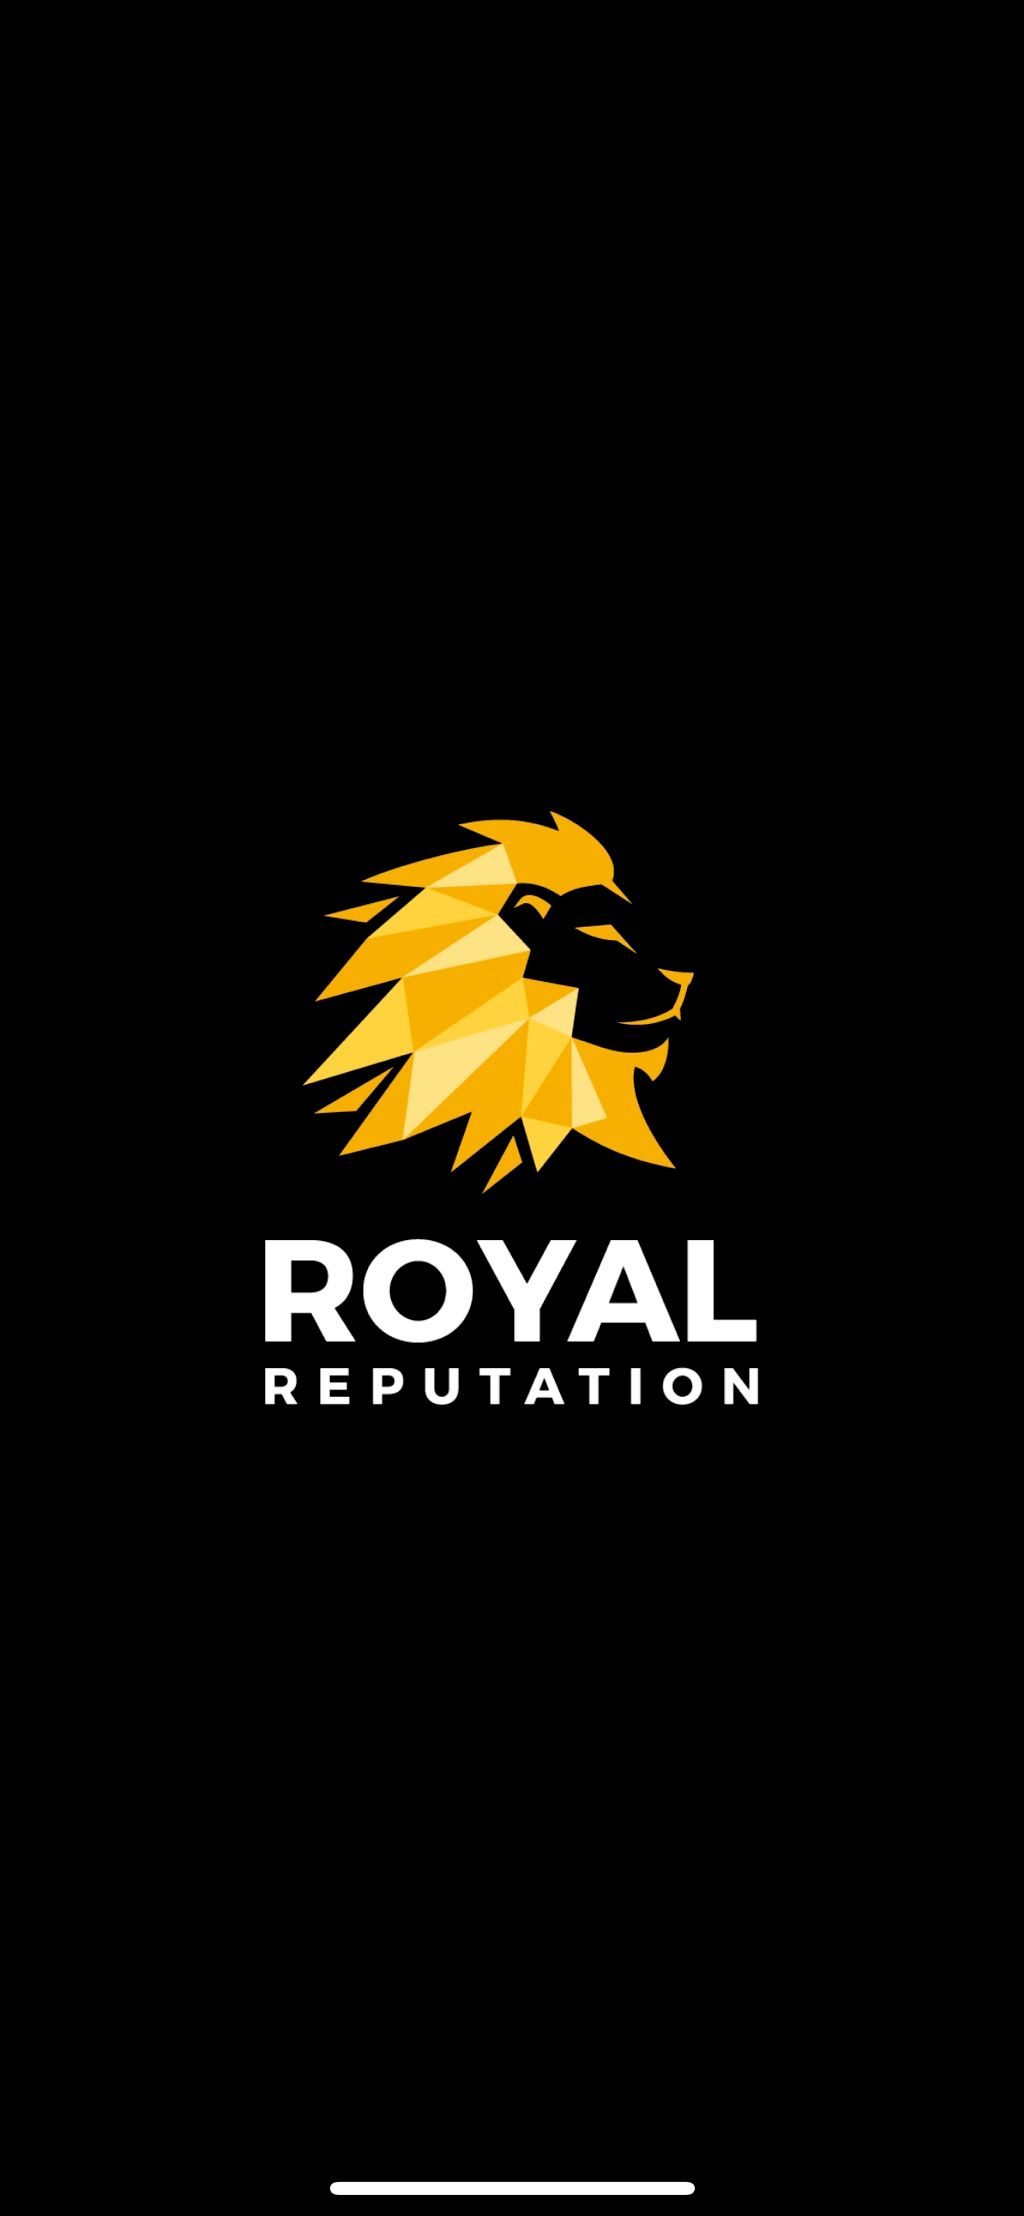 Royal Reputation